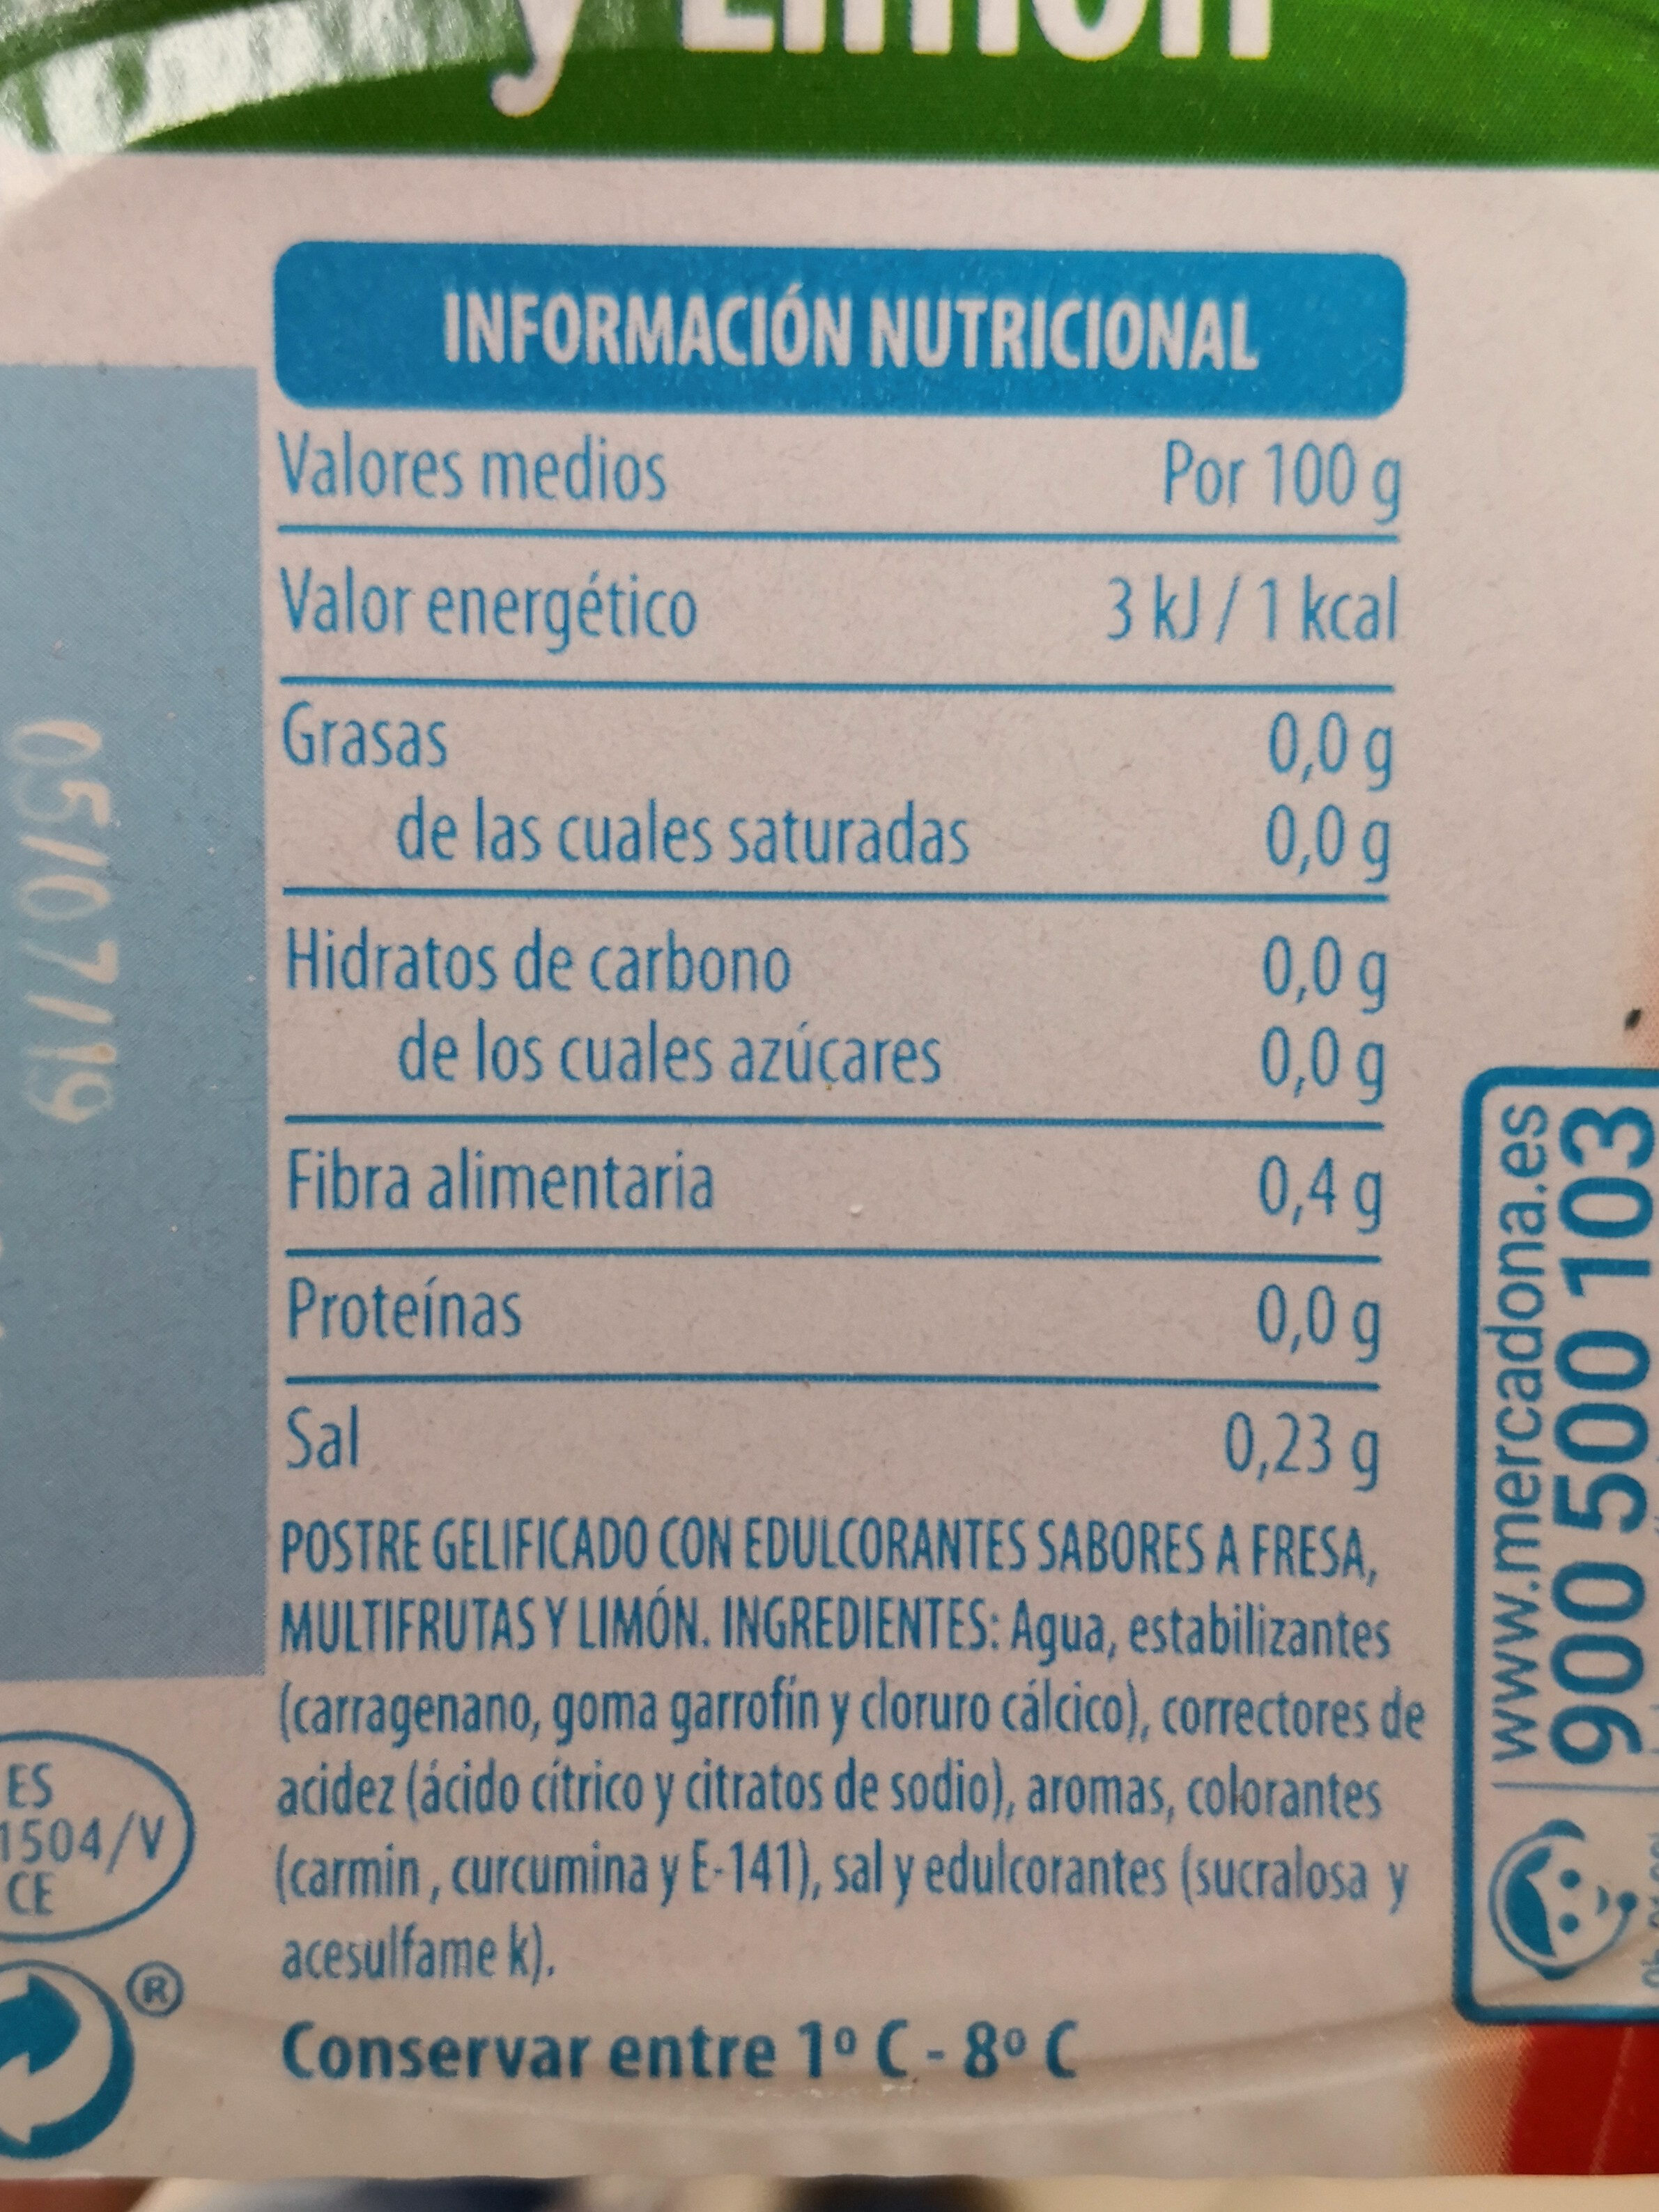 Gellytina de fresa, multifrutas y limón 0% - Información nutricional